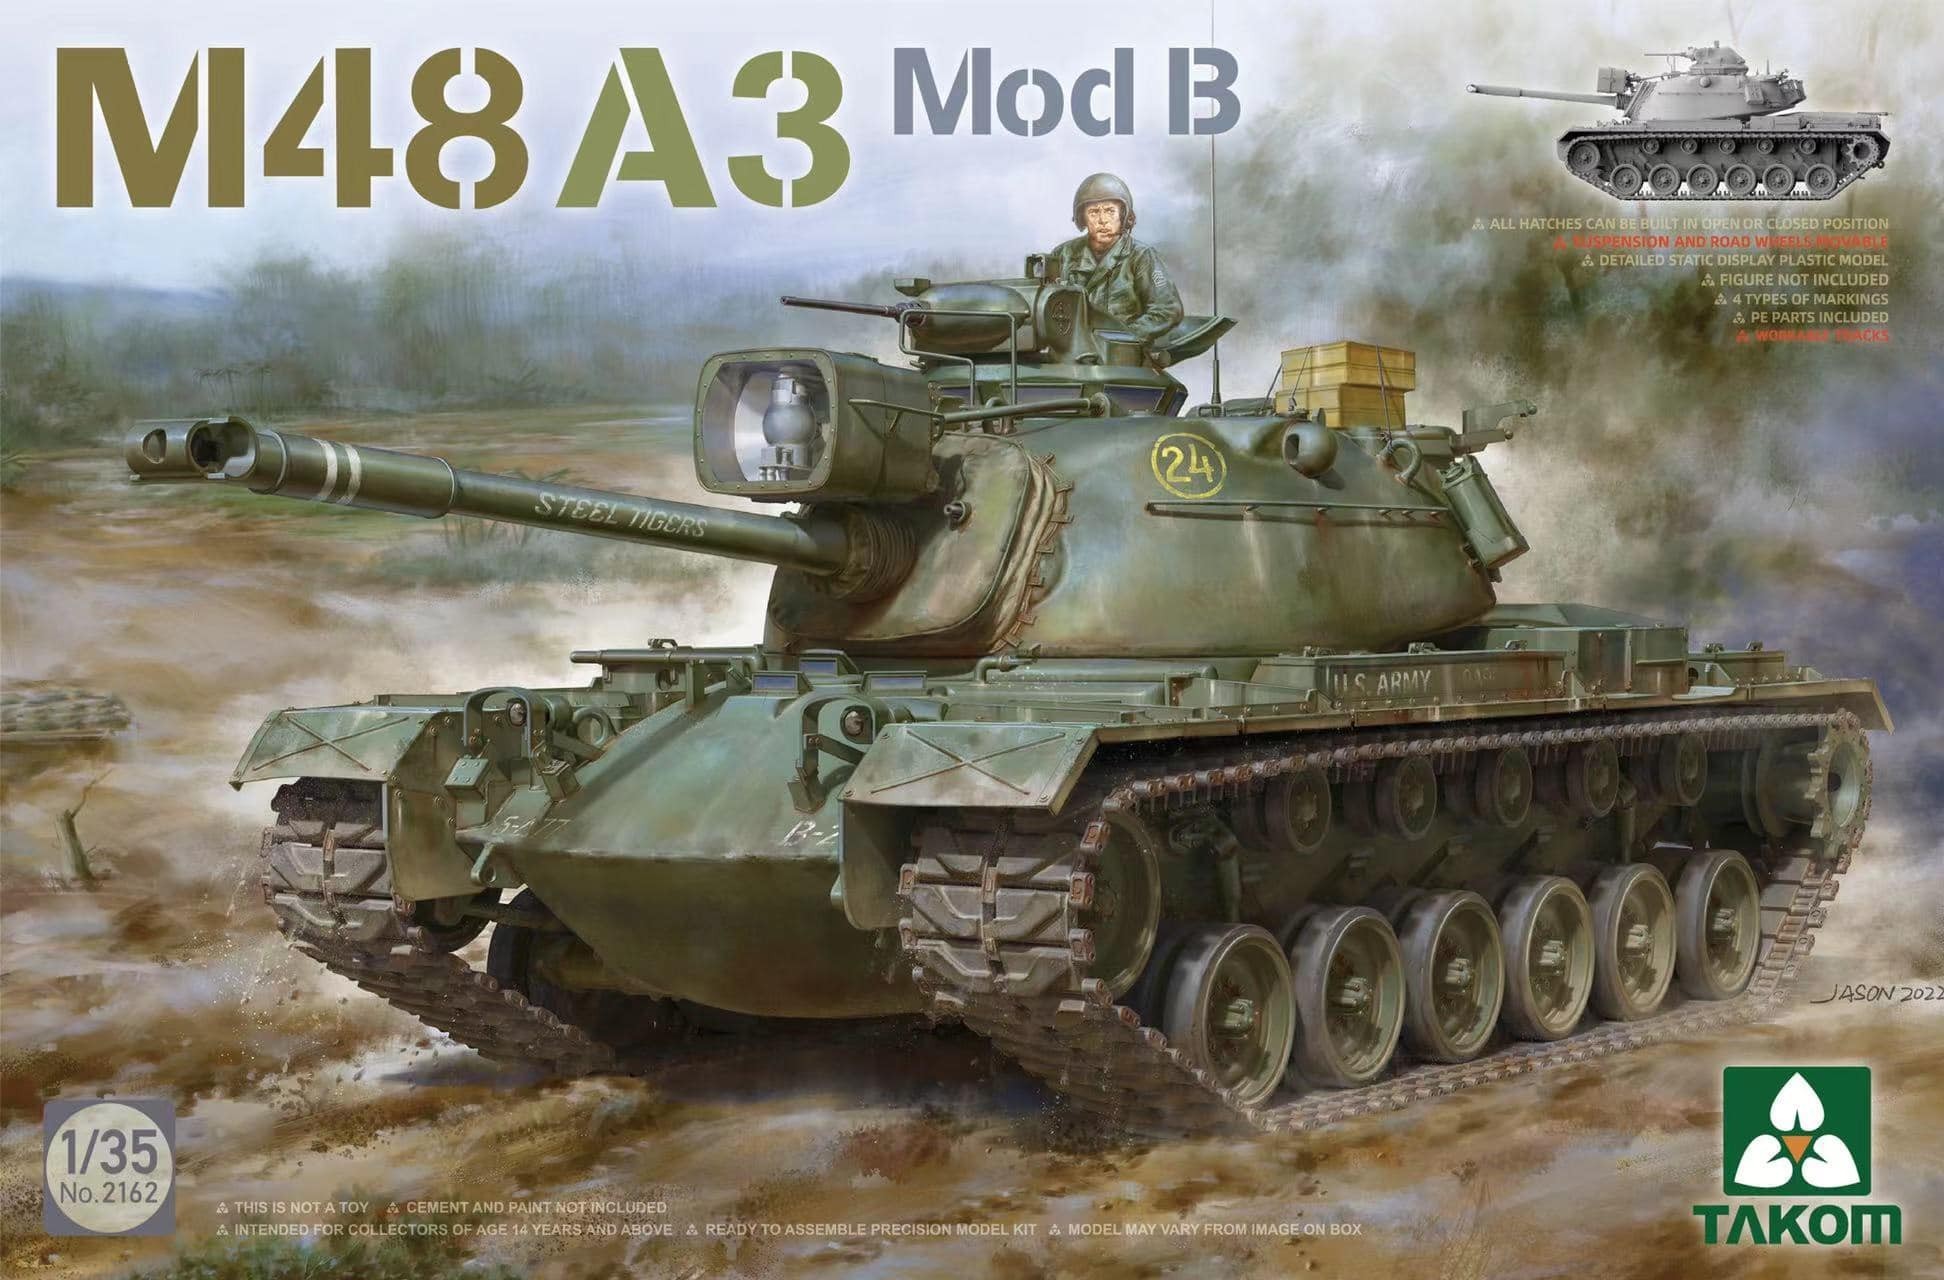 2162 - M48A3 Mod B